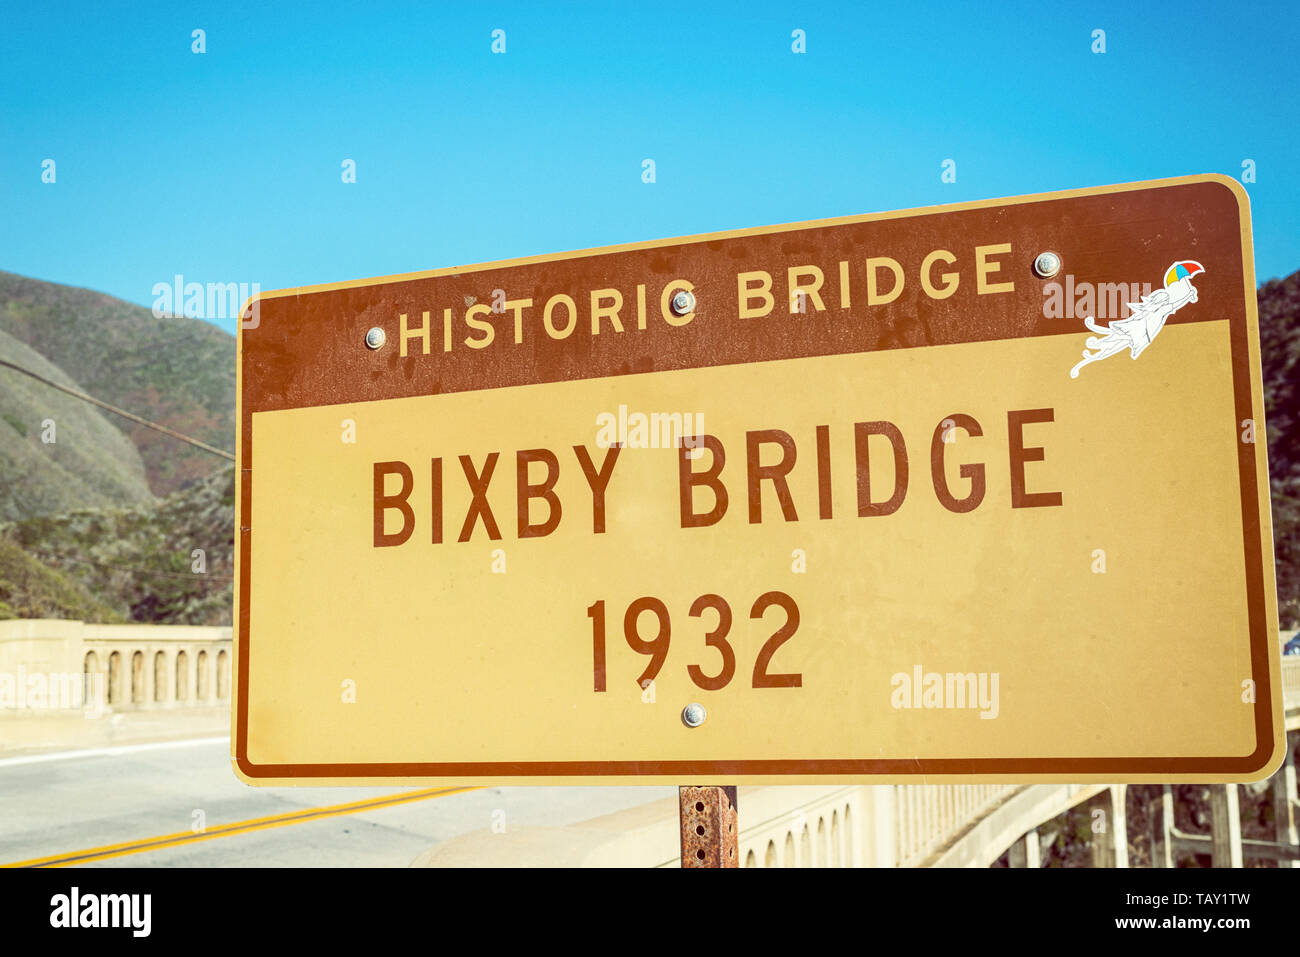 Bixby Bridge signe. Big Sur, en Californie, aux États-Unis. Photographie traitée avec vieille photo/effet vintage. Banque D'Images